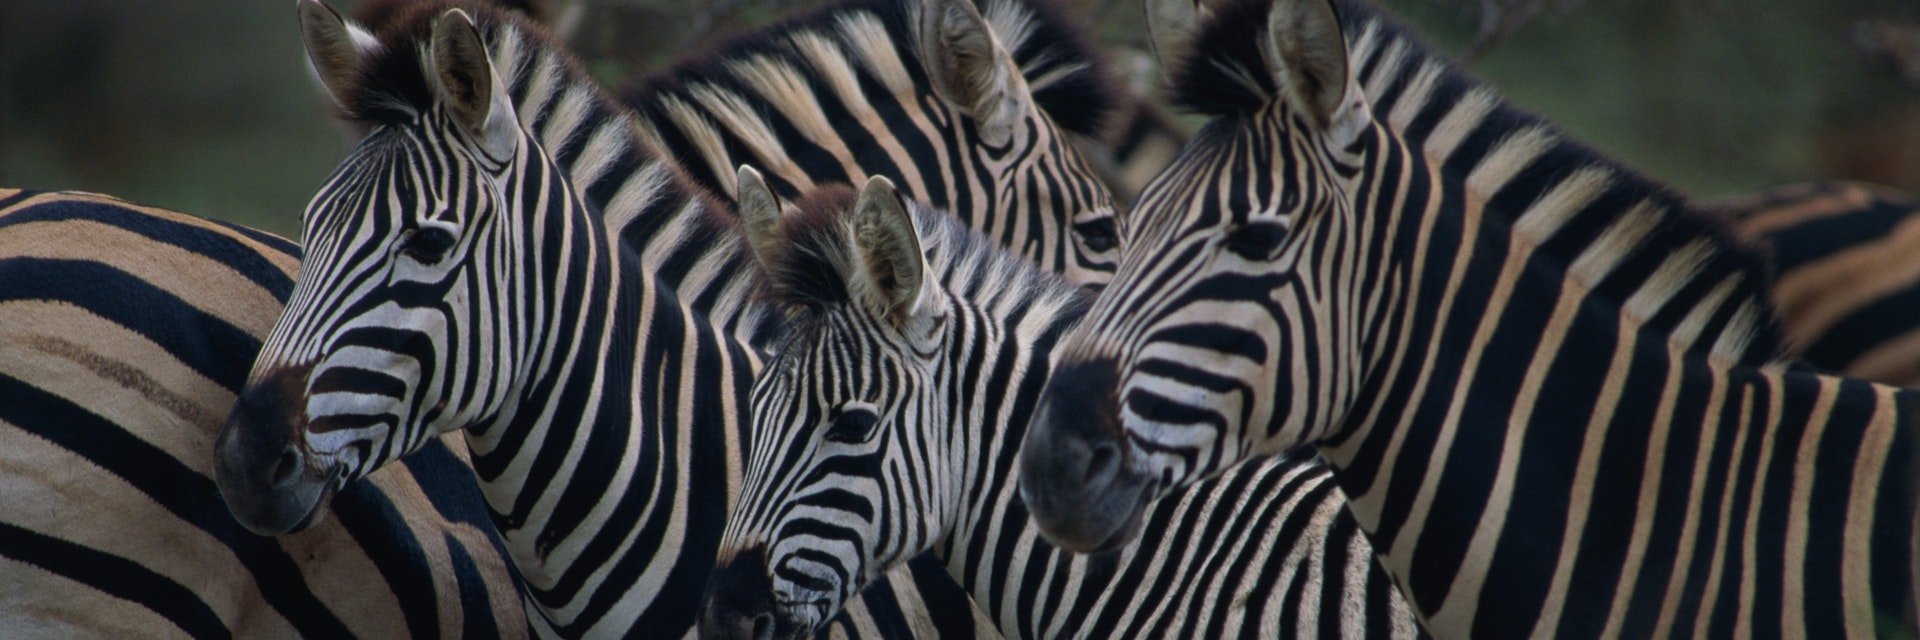 Herd of Burchell's Zebra, Kruger National Park.